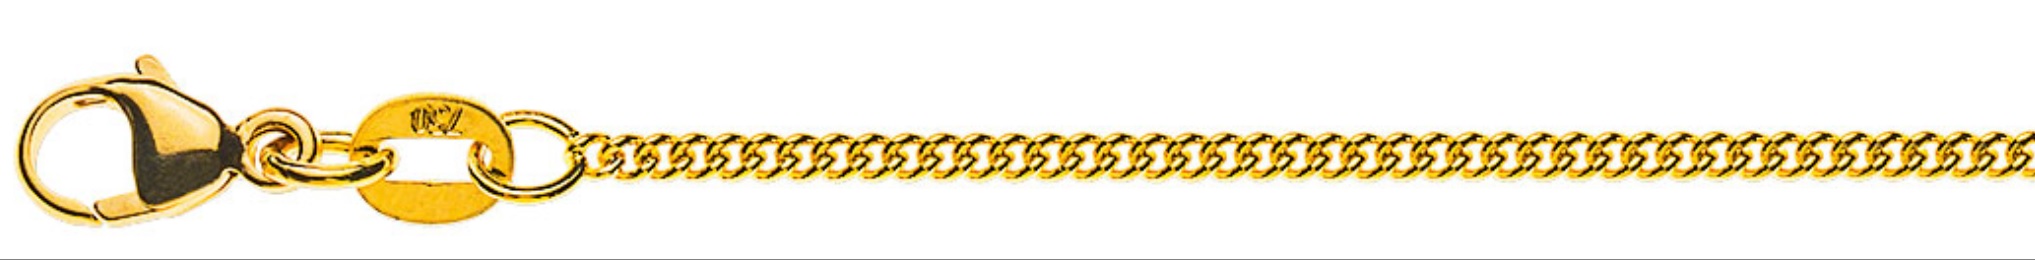 AURONOS Prestige Collier en or jaune 18K chaîne blindée ronde 60cm 1.6mm